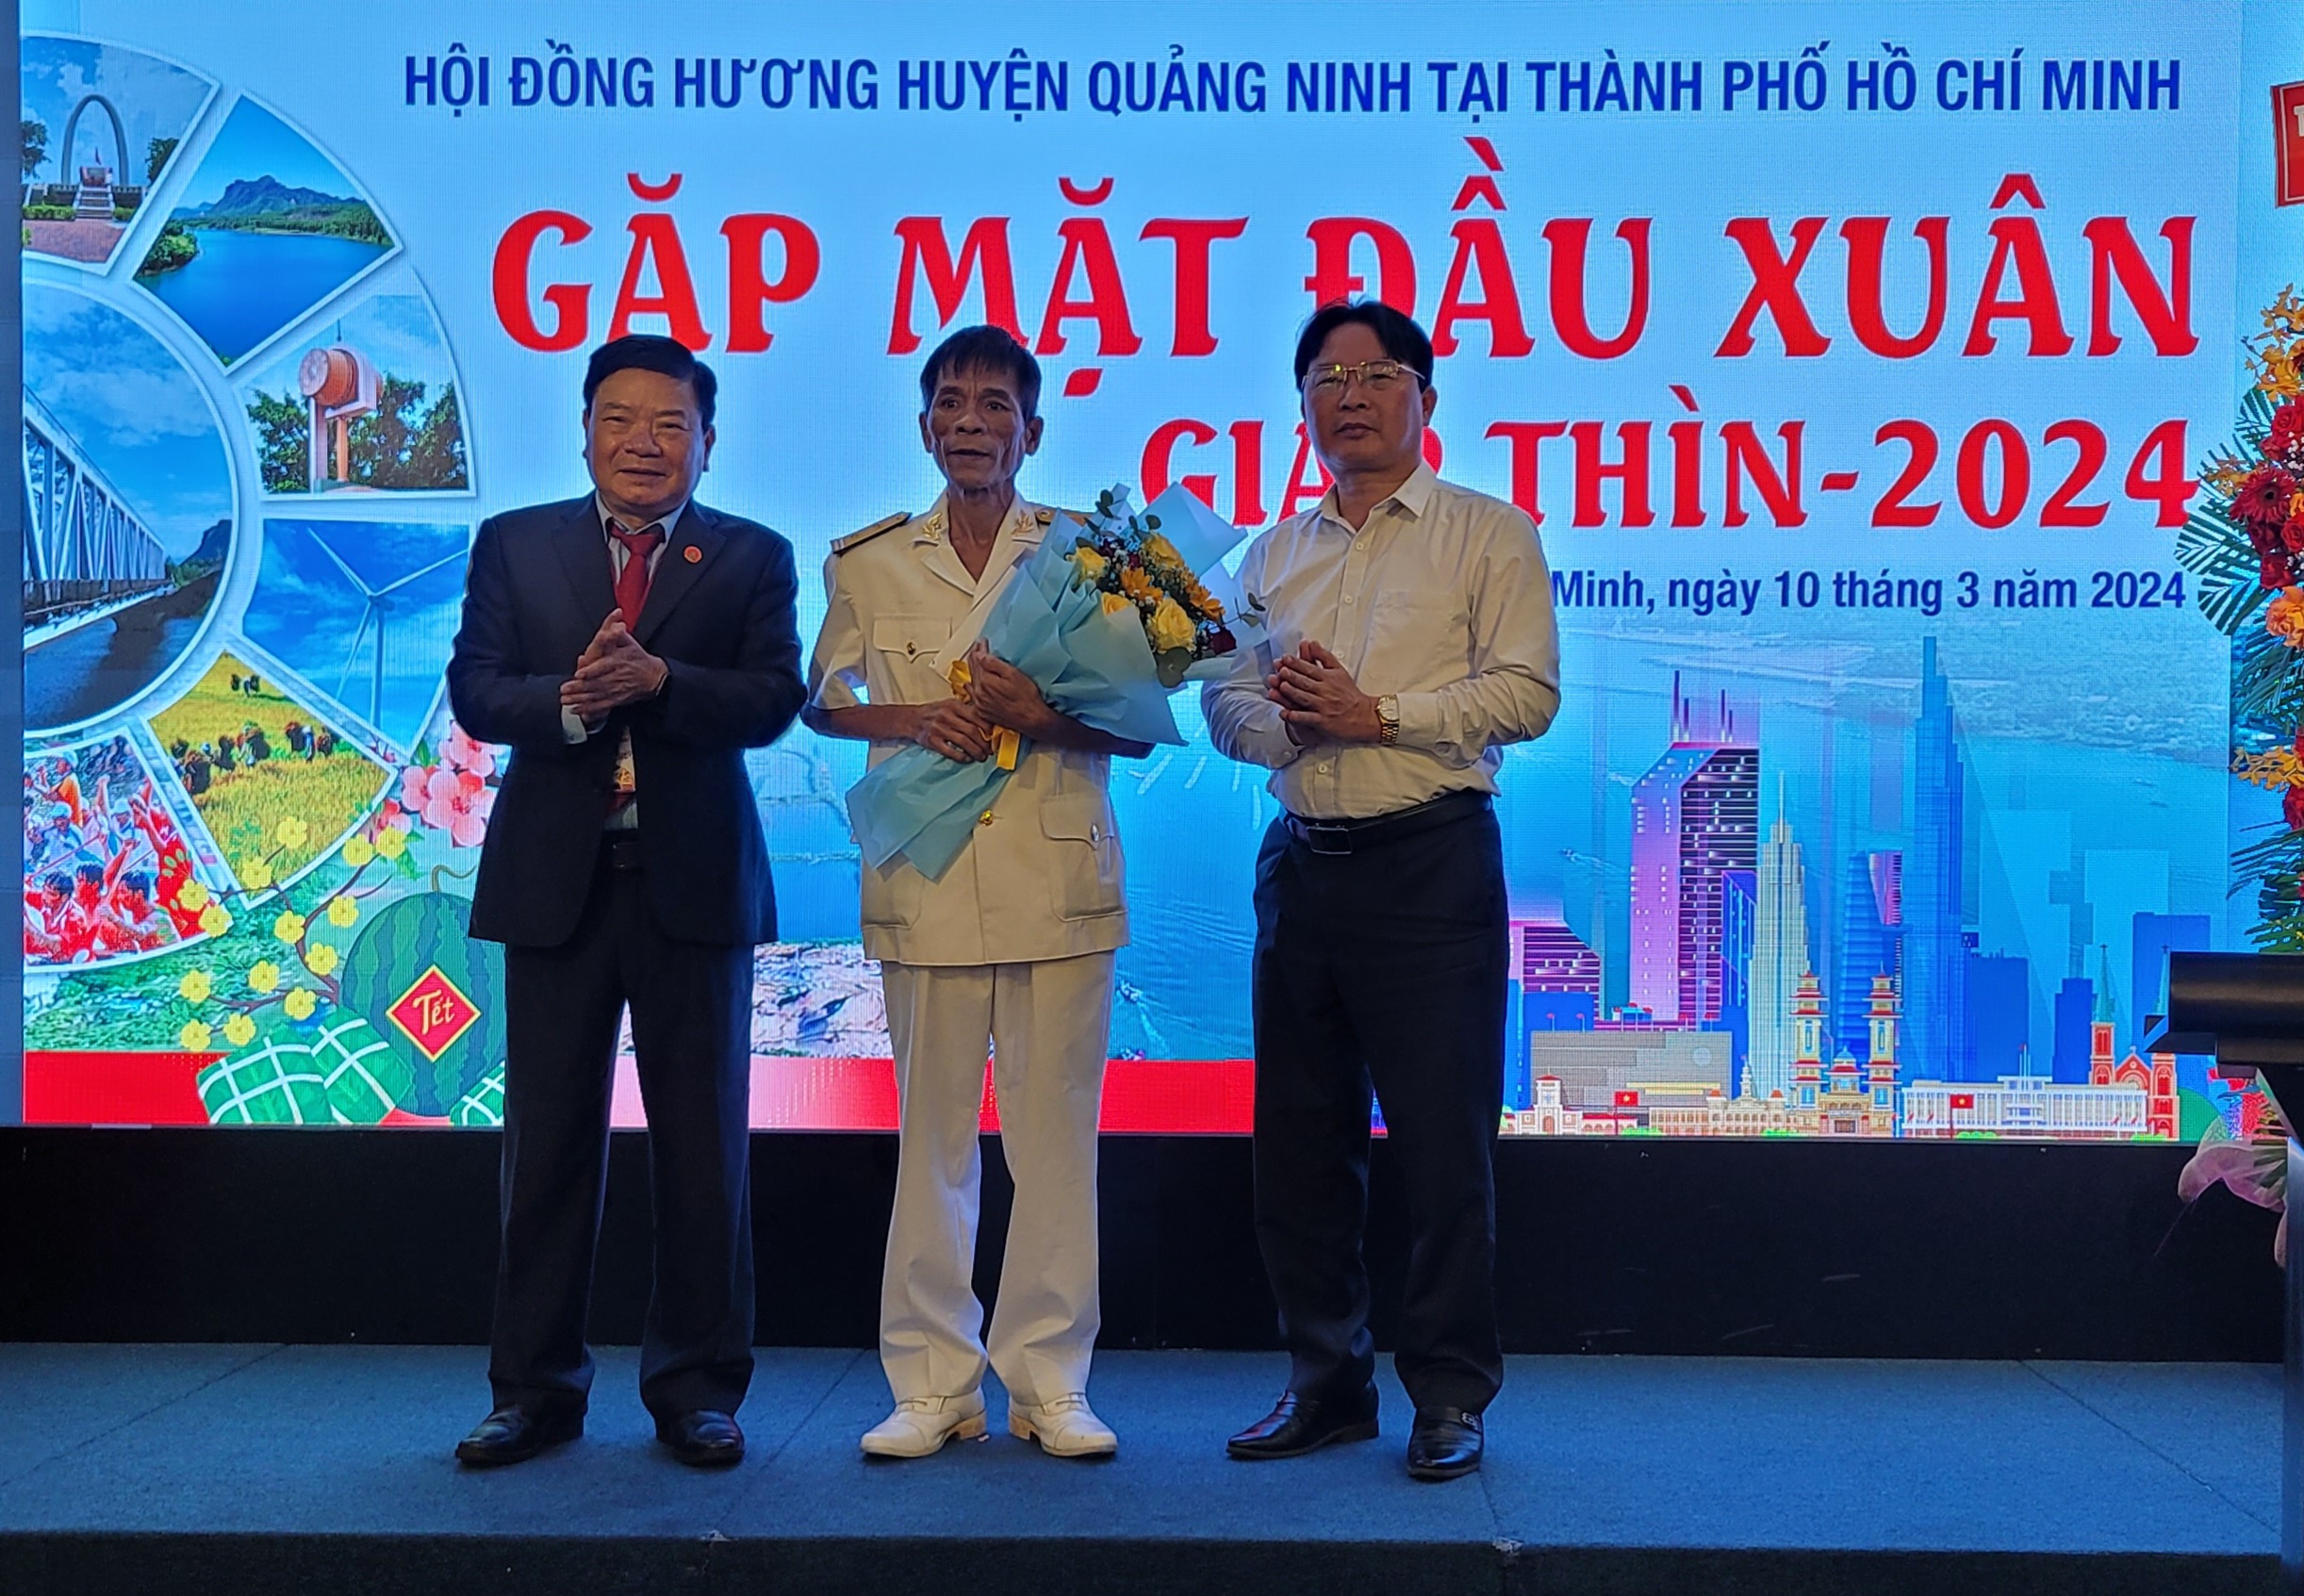 Đại diện lãnh đạo huyện Quảng Ninh và đại diện Hội đồng hương huyện Quảng Ninh tại TP. Hồ Chí Minh tặng hoa cho Anh hùng lực lượng vũ trang nhân dân Nguyễn Văn Lanh.